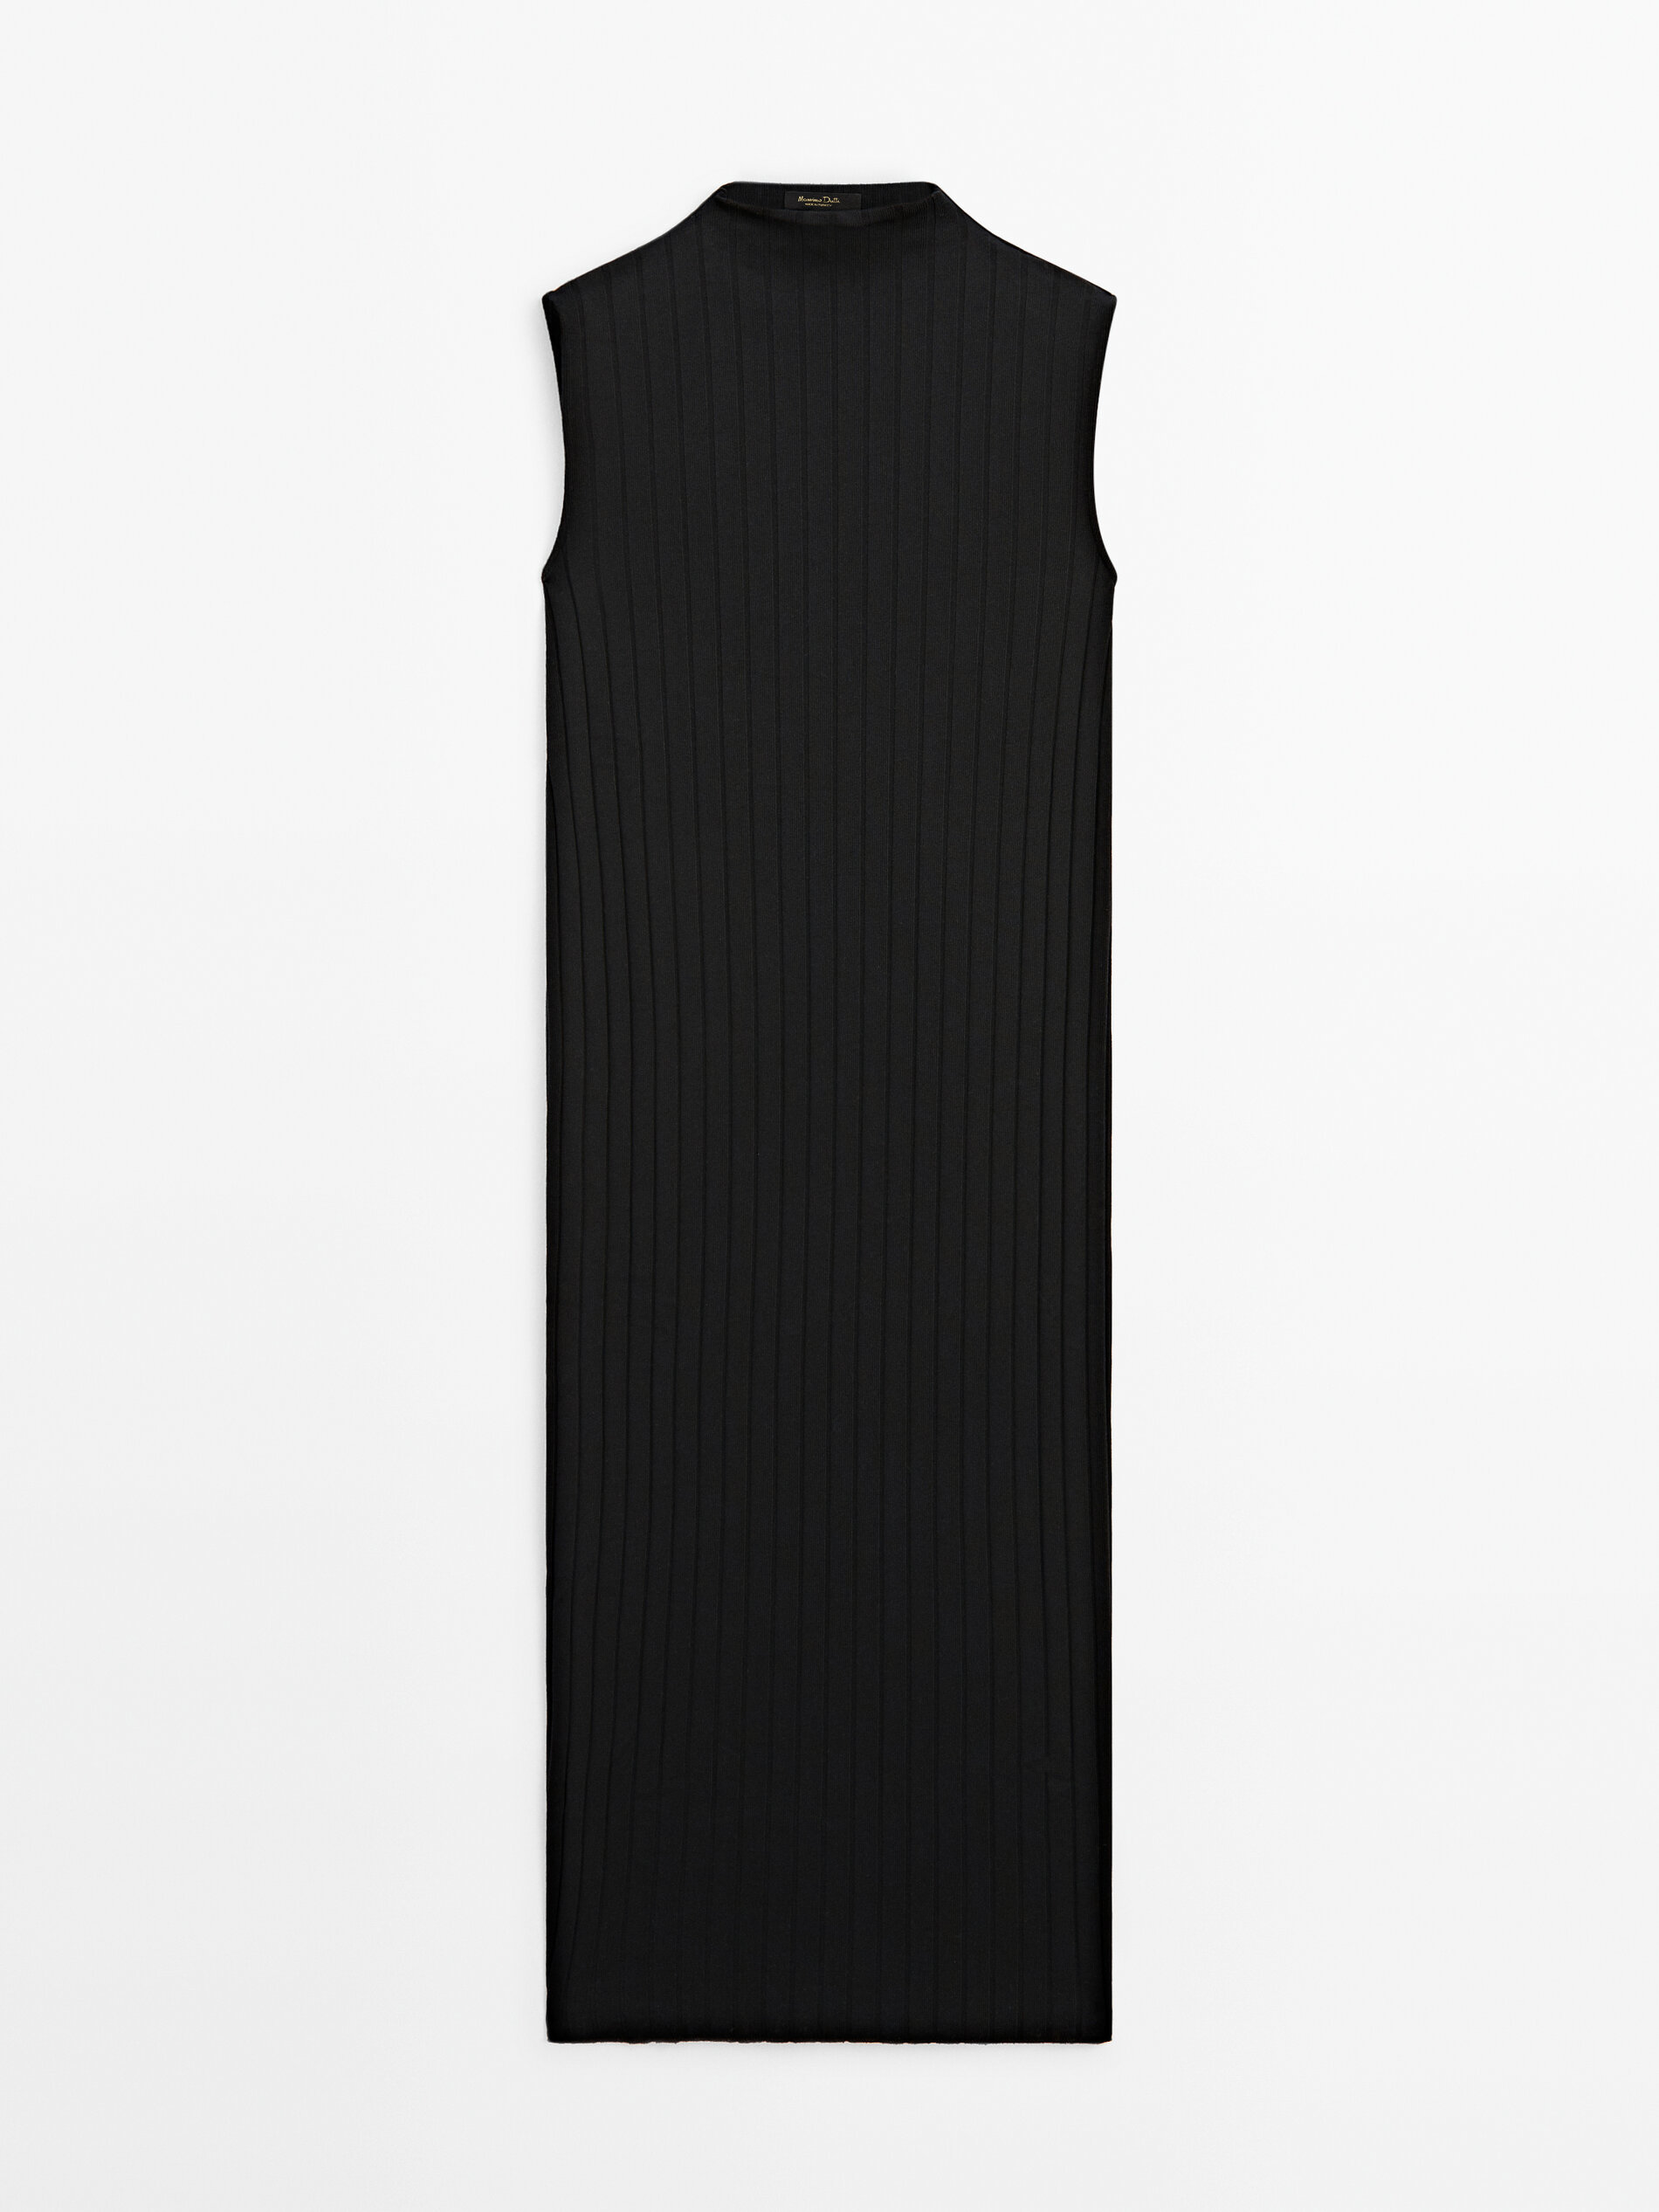 Renueva tu armario con el vestido midi de punto de canal de Massimo Dutti que te har sentir fabulosa a los 60 aos